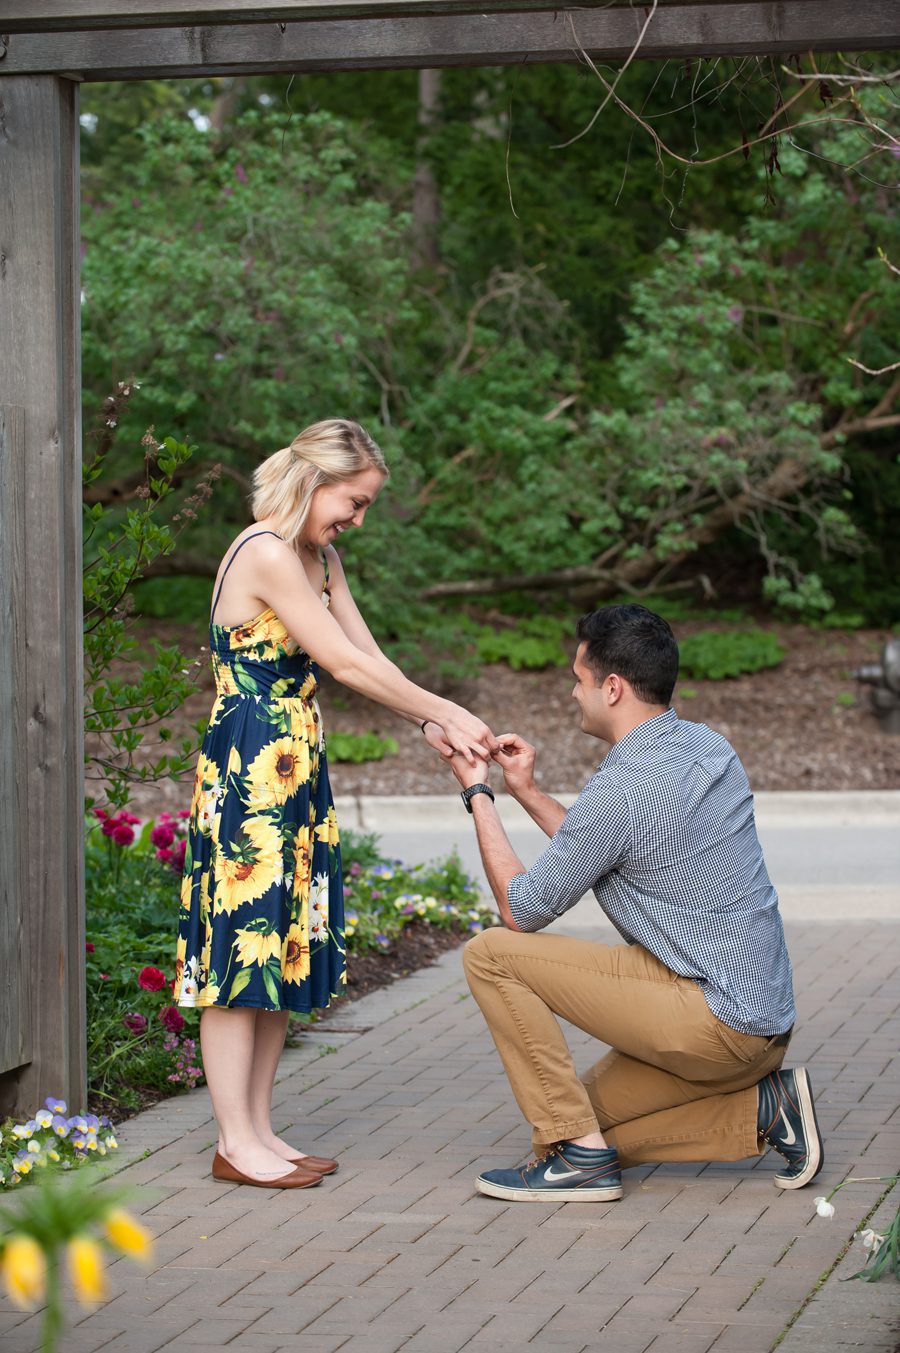 surprise proposal photography – Elite Photo engagement photograp